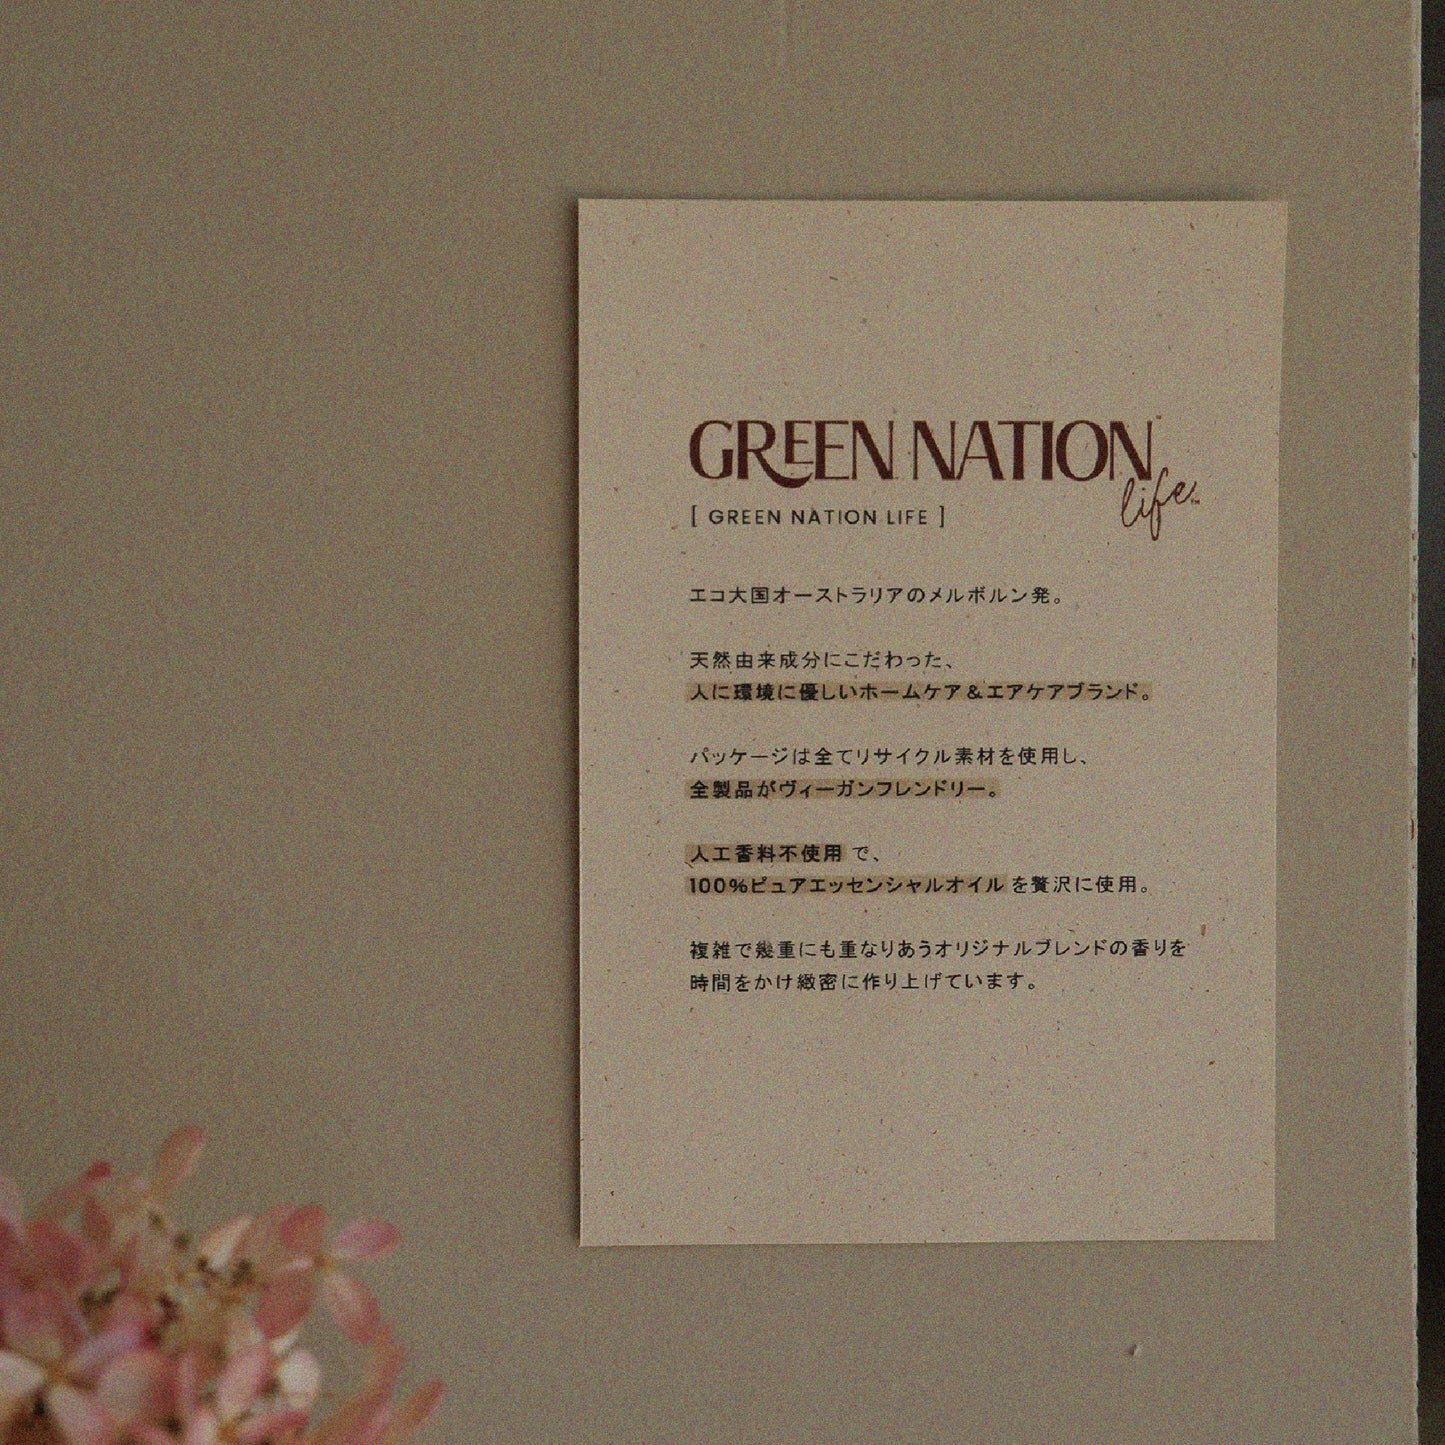 [ GREEN NATION LIFE ]  ハンドウォッシュ ( スイートオレンジ&レモングラス ) - 500ml